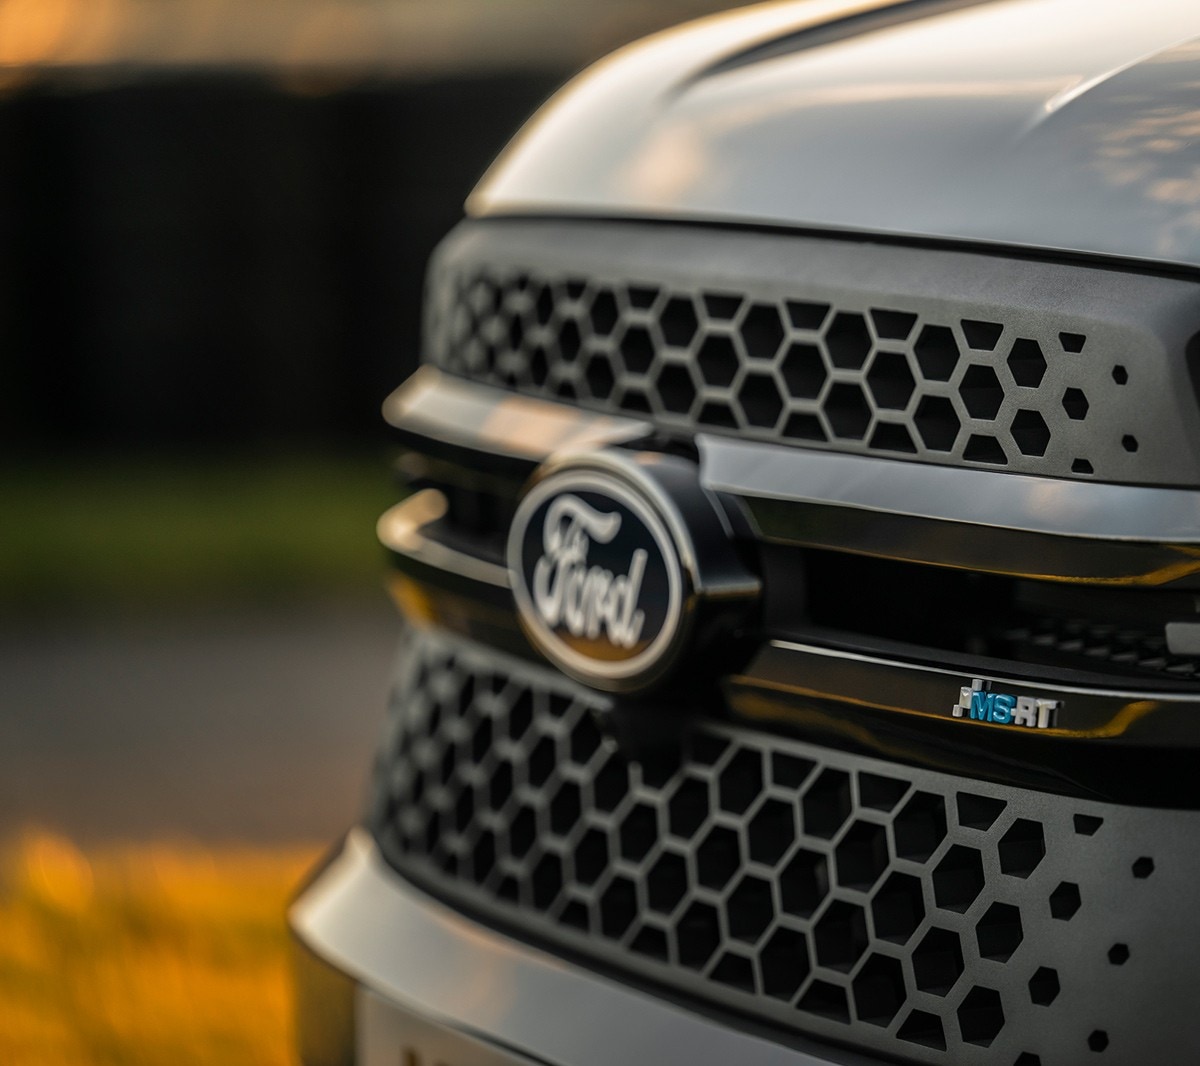 Ford Ranger MSRT honeycomb grille